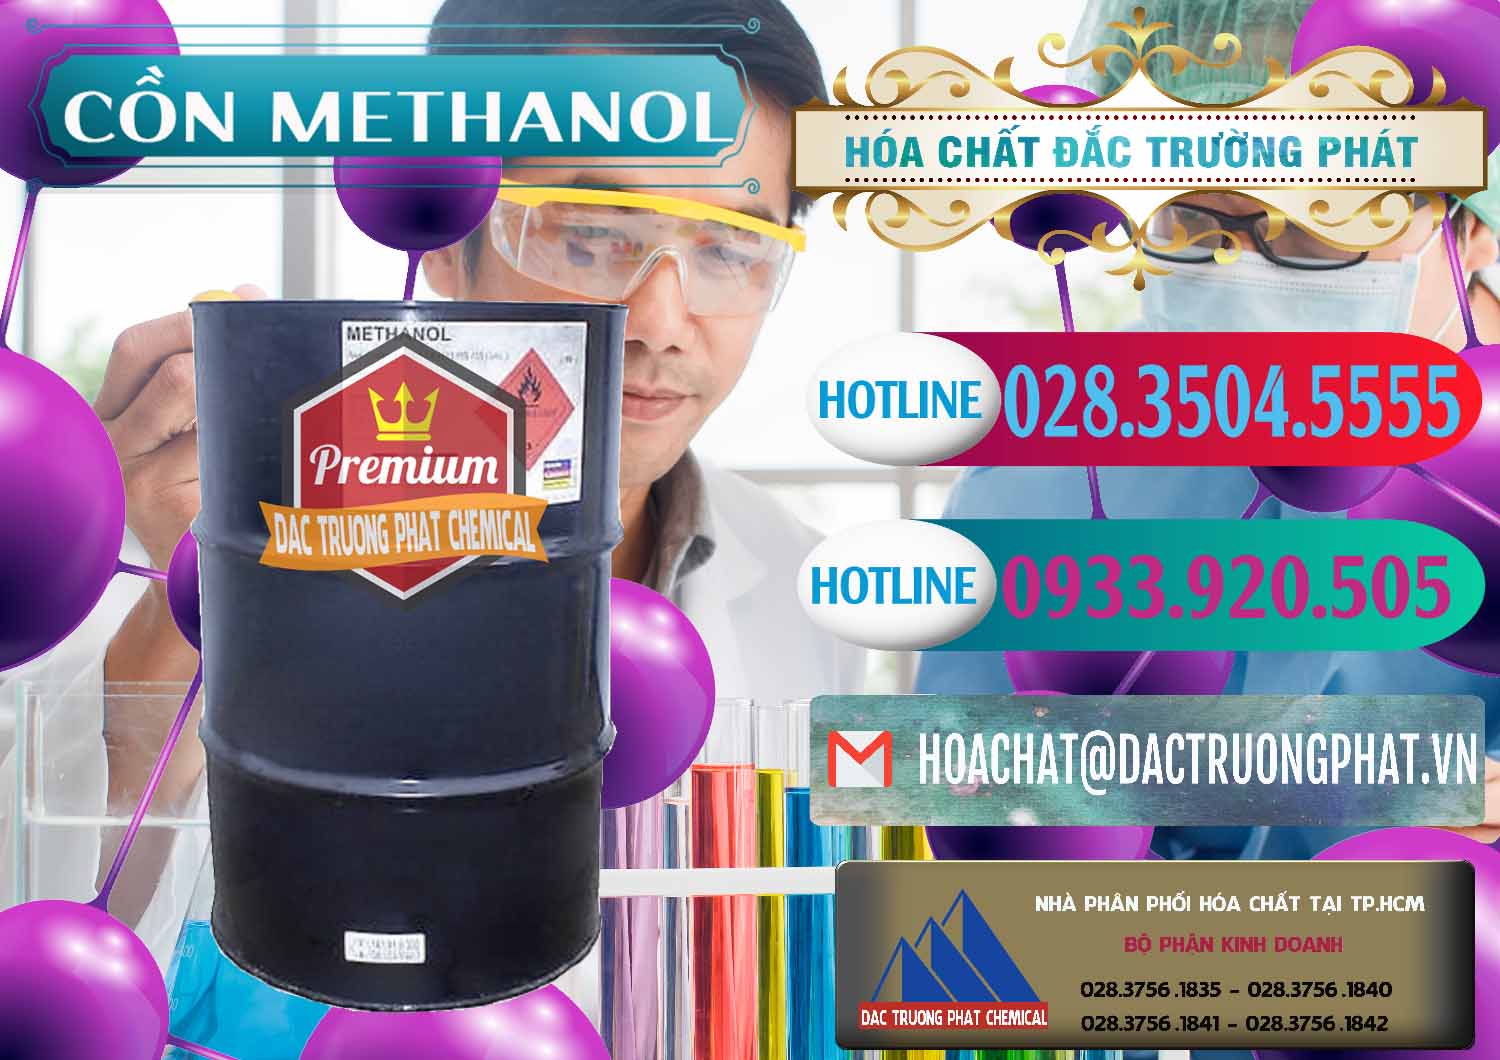 Cty chuyên bán và phân phối Cồn Methanol - Methyl Alcohol Mã Lai Malaysia - 0331 - Nơi bán - phân phối hóa chất tại TP.HCM - truongphat.vn